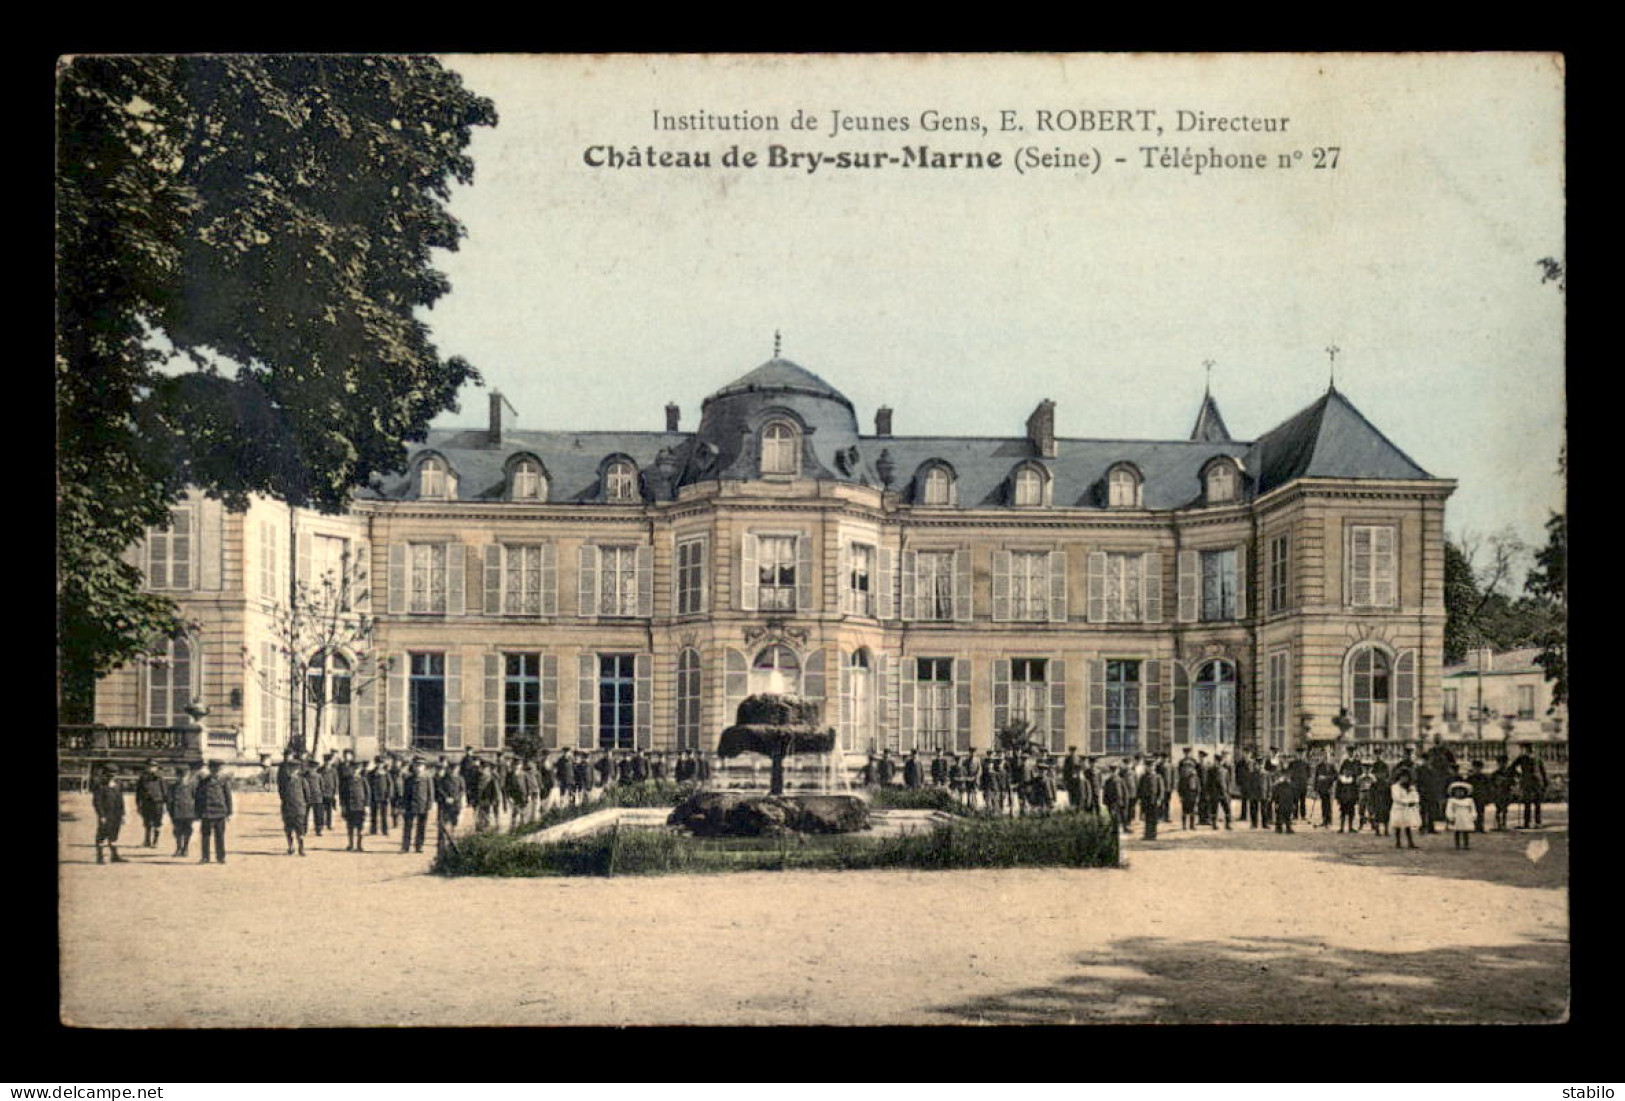 94 - BRY-SUR-MARNE - LE CHATEAU - INSTITUTION DE JEUNES GENS E. ROBERT DIRECTEUR - Bry Sur Marne